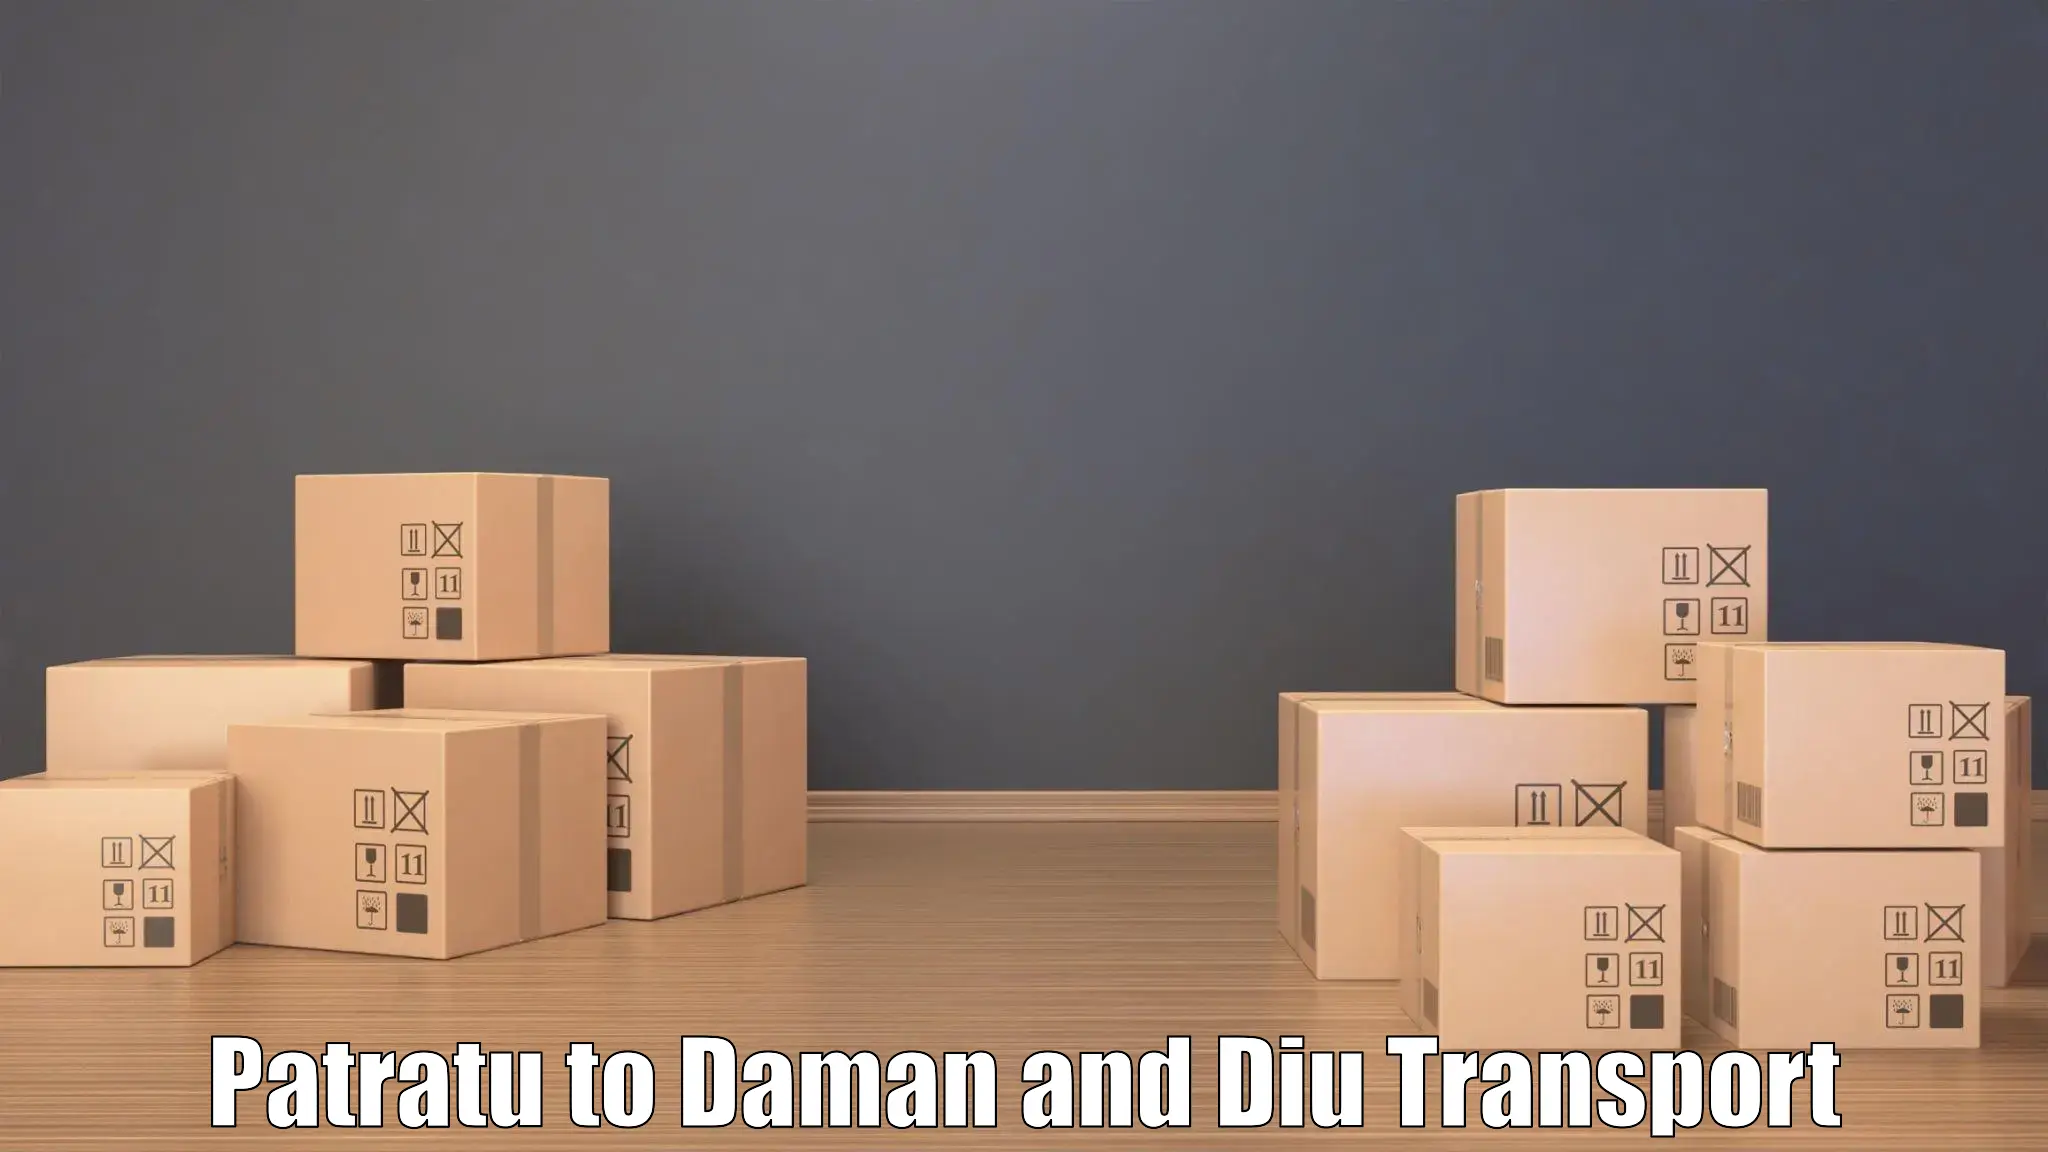 Nearest transport service Patratu to Daman and Diu